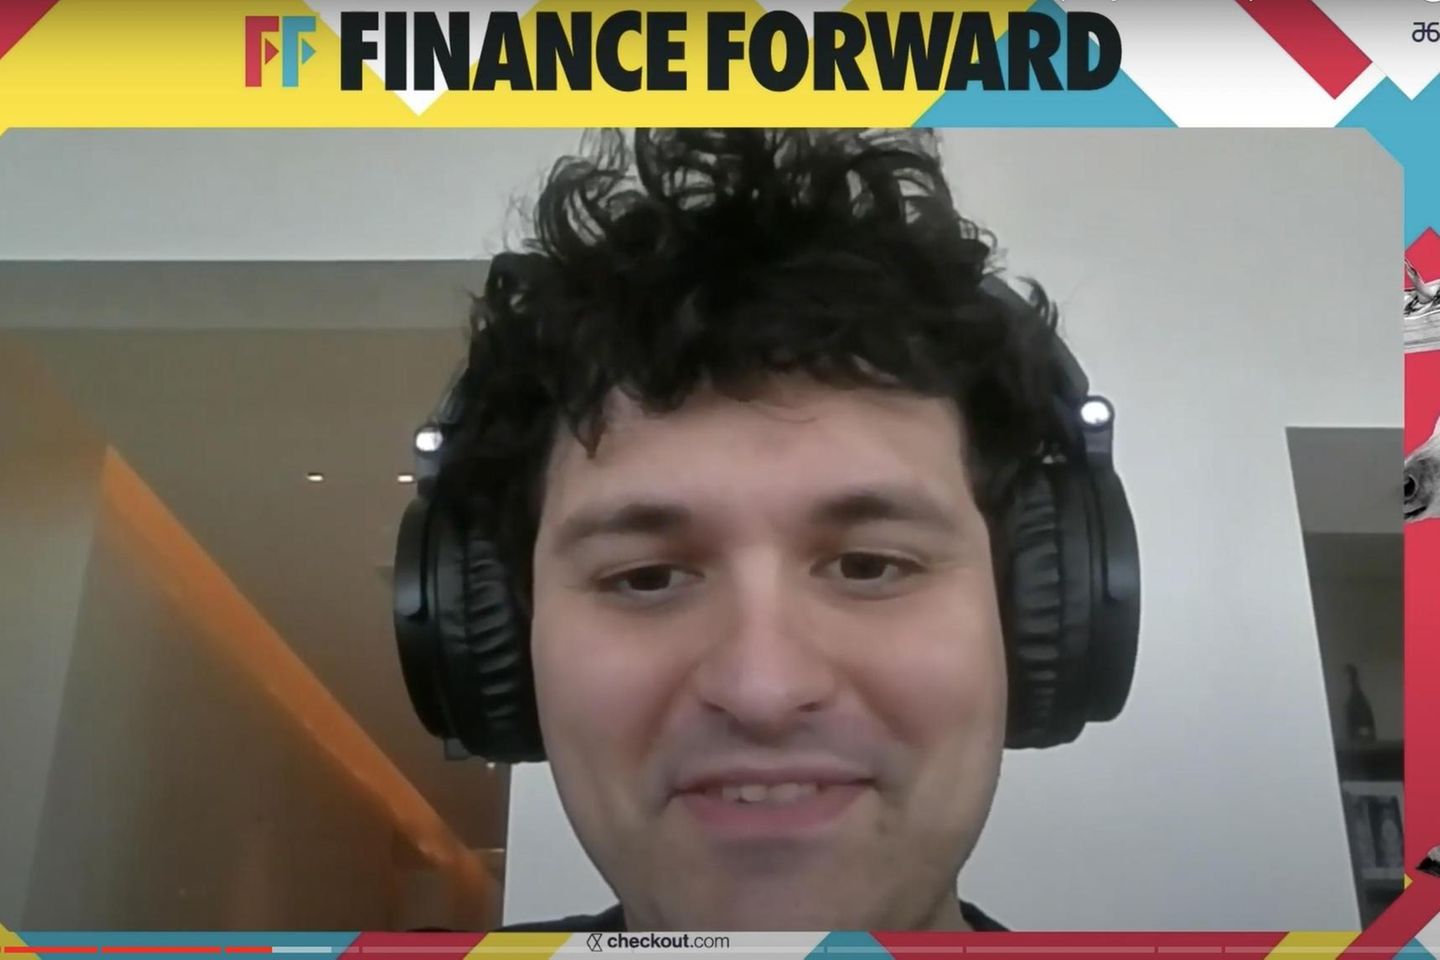 FTX-Gründer Sam Bankman-Fried während der Videoschalte auf der Finance-Forward-Konferenz